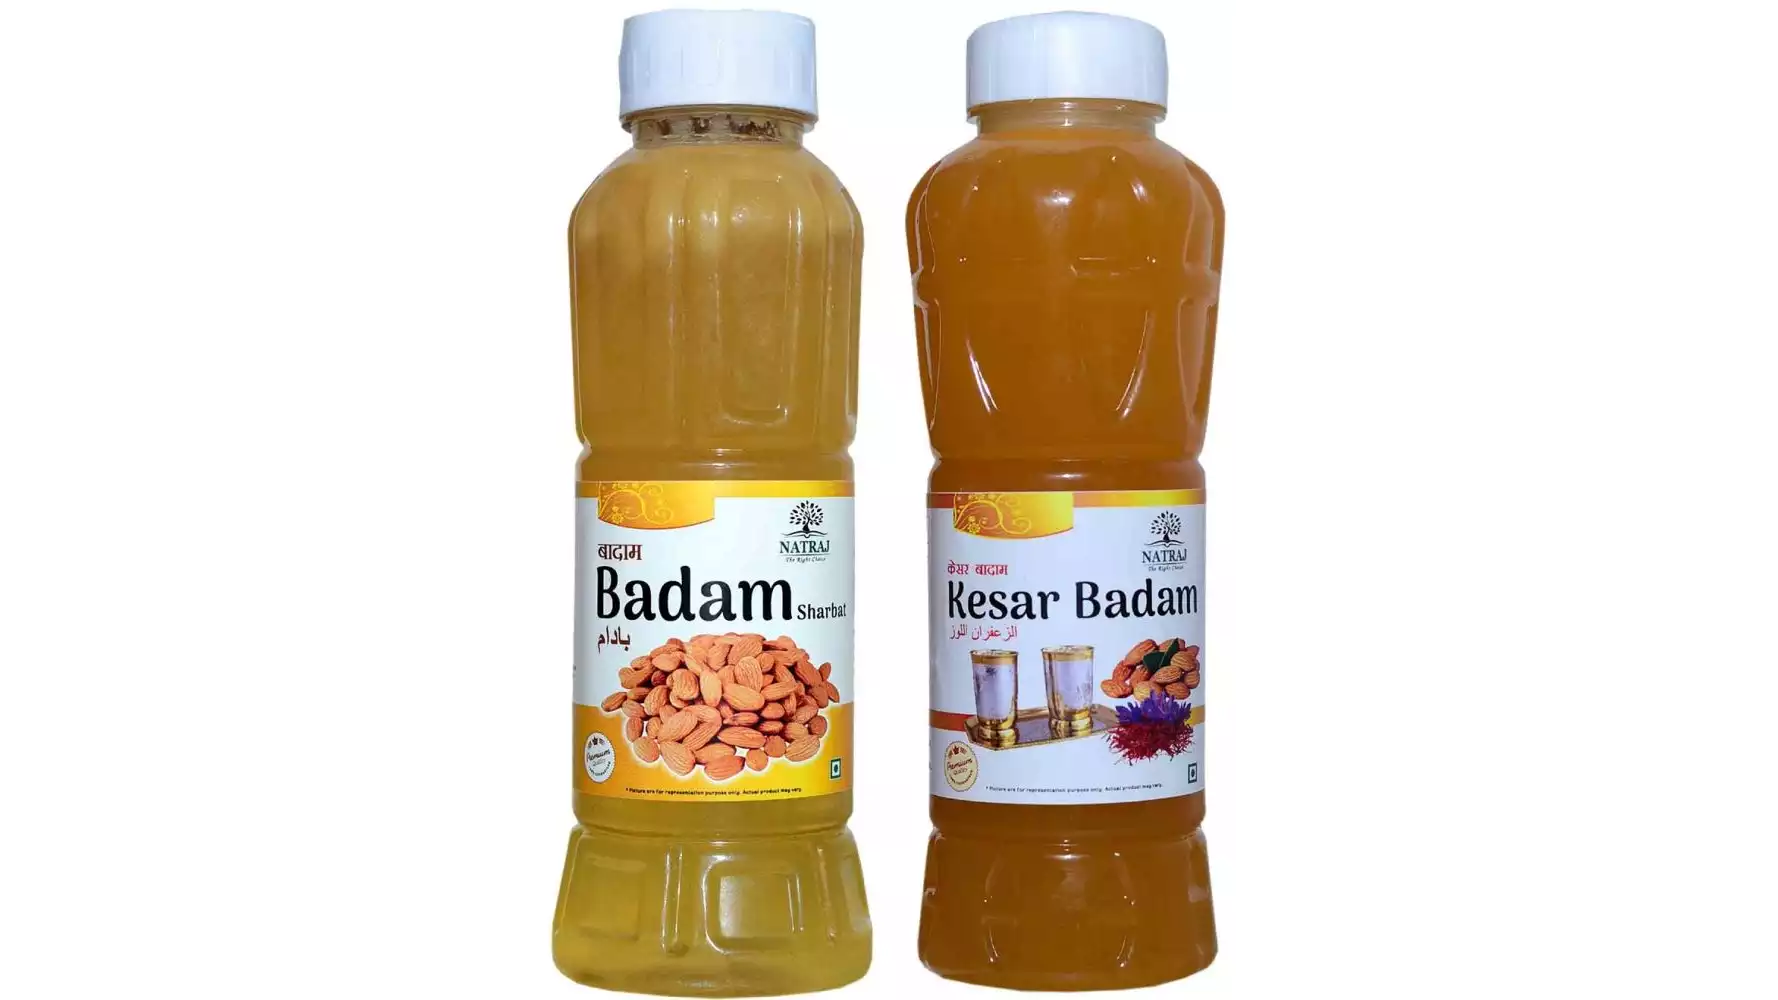 Natraj Badam & Kesar Badam Sharbat Combo (1Pack)